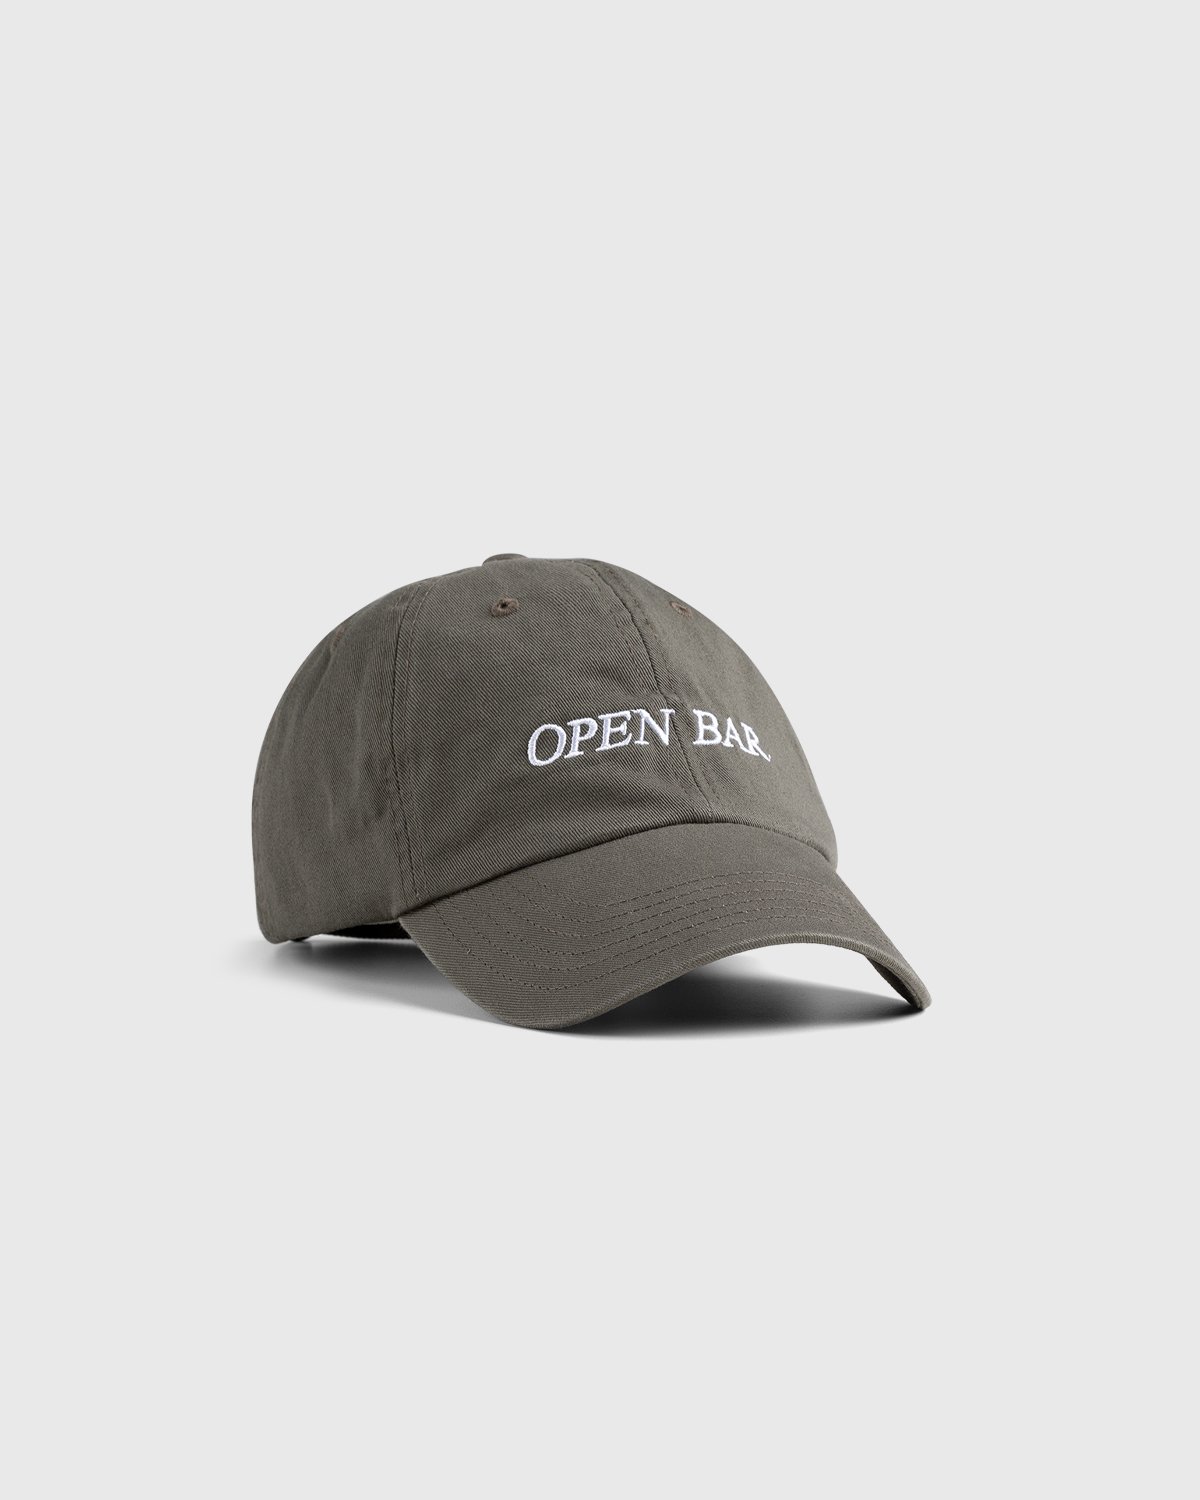 HO HO COCO - Open Bar Cap Grey  - Accessories - Grey - Image 1